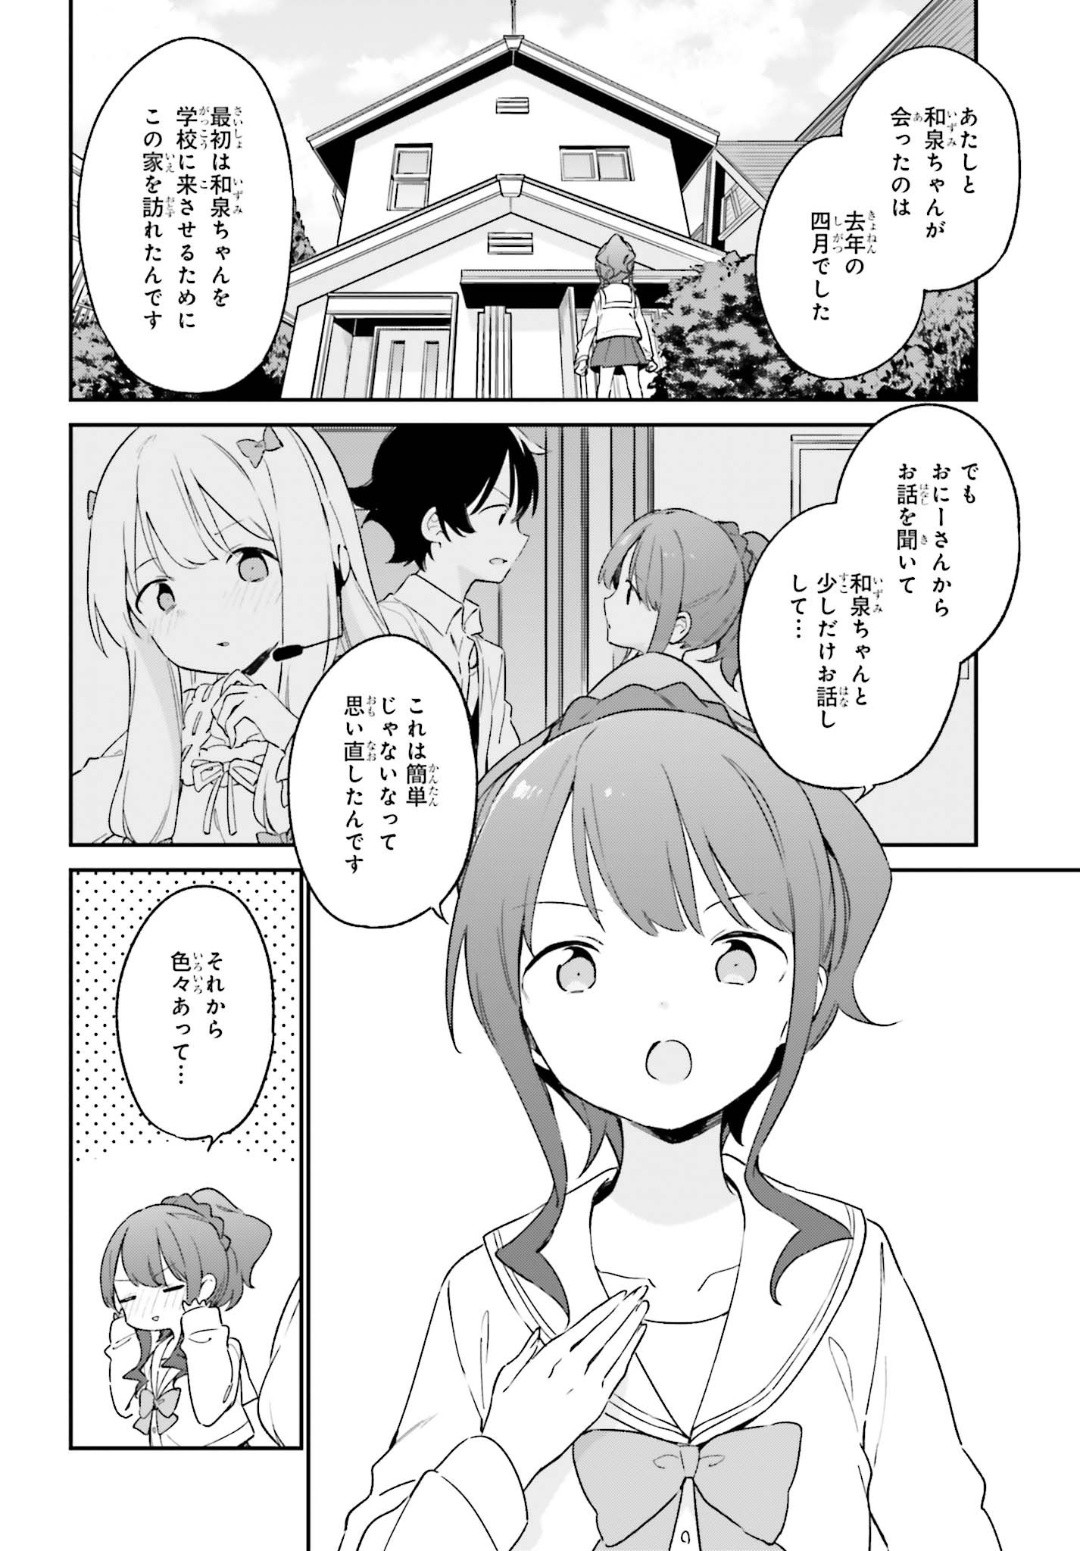 Ero Manga Sensei - Chapter 64 - Page 4